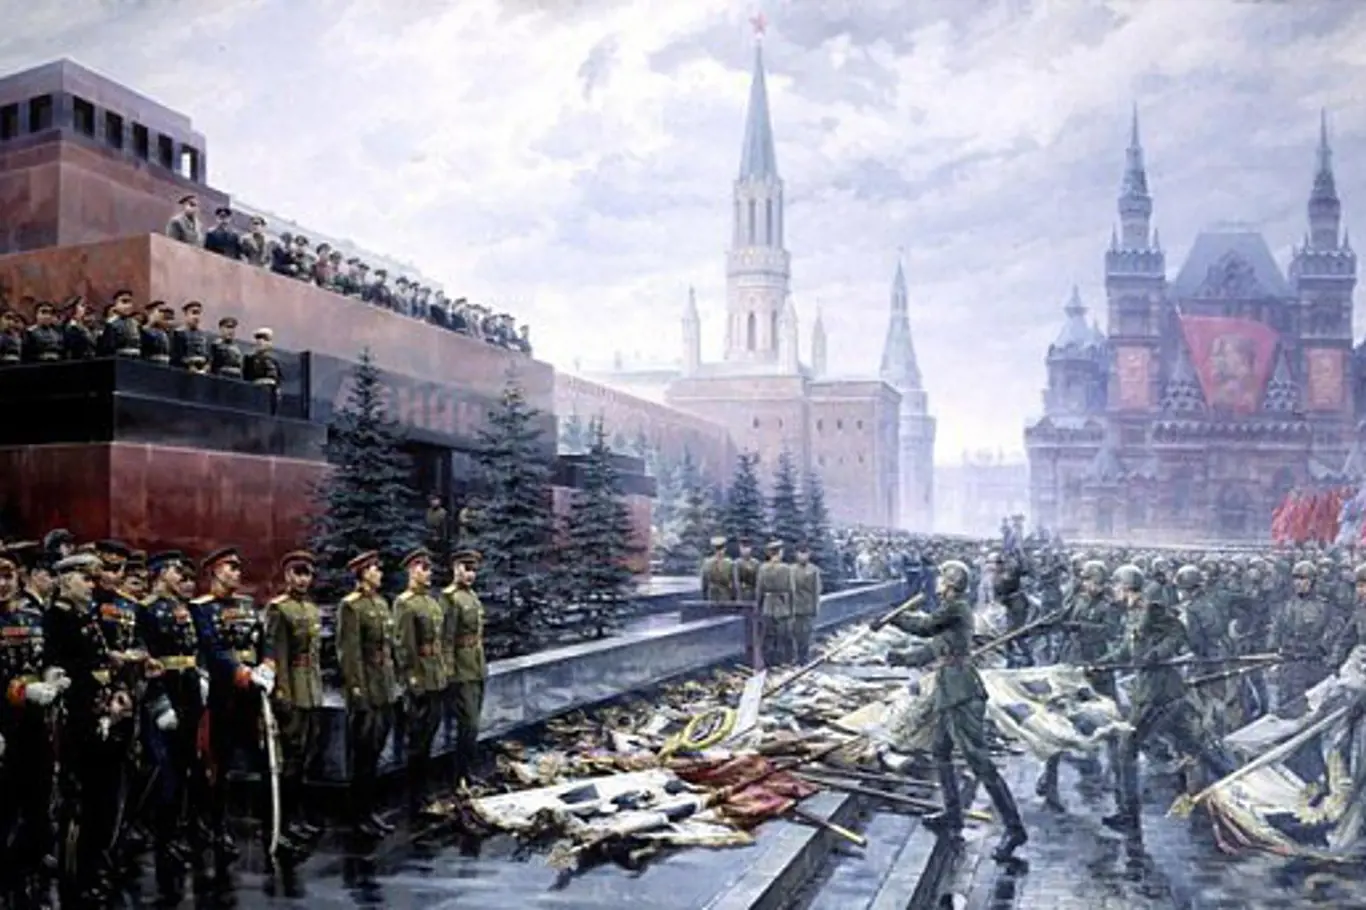 Triumf impéria v roce 1945: Rudá armáda klade ukořistěné bojové zástavy Němců k symbolům sovětské identity – Leninovu mauzoleu u moskevského Kremlu a zároveň k nohám diktátora Stalina.